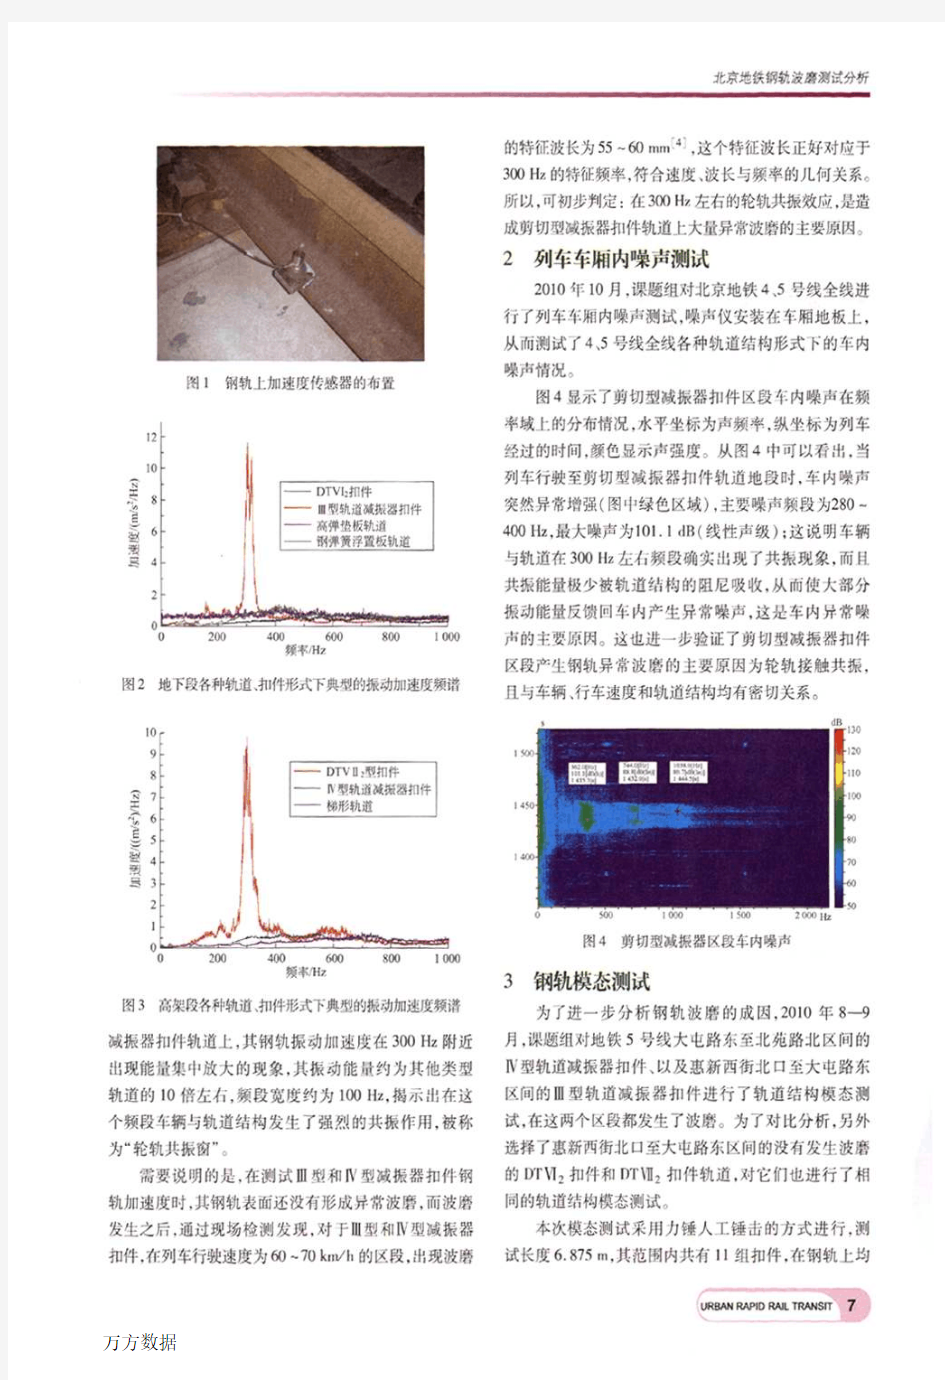 北京地铁钢轨波磨测试分析